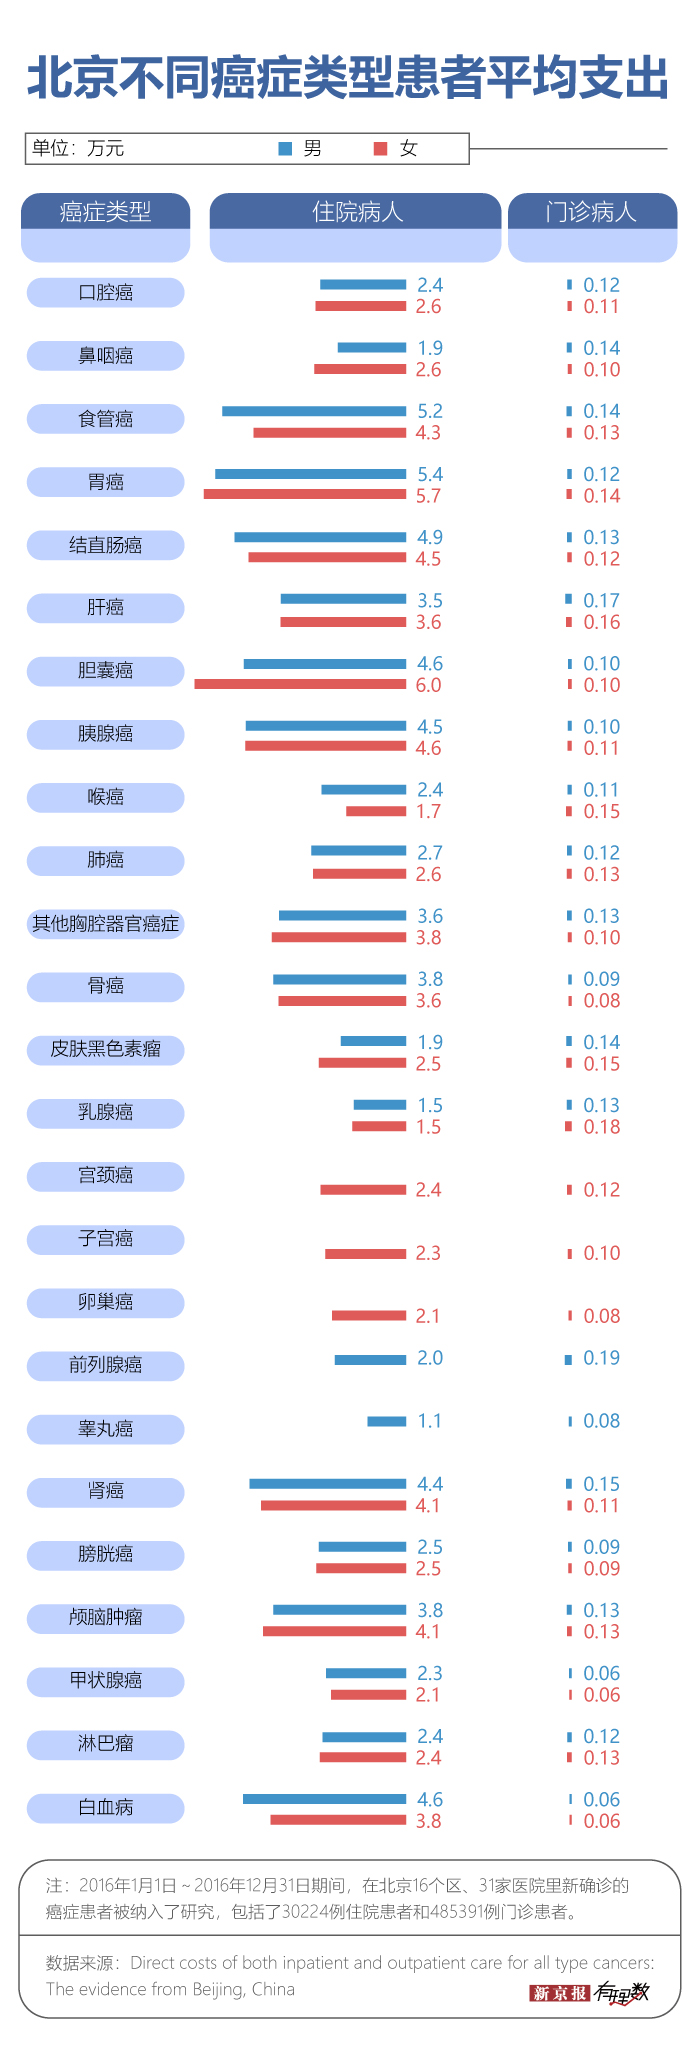 北京癌症治疗患者平均治疗费用